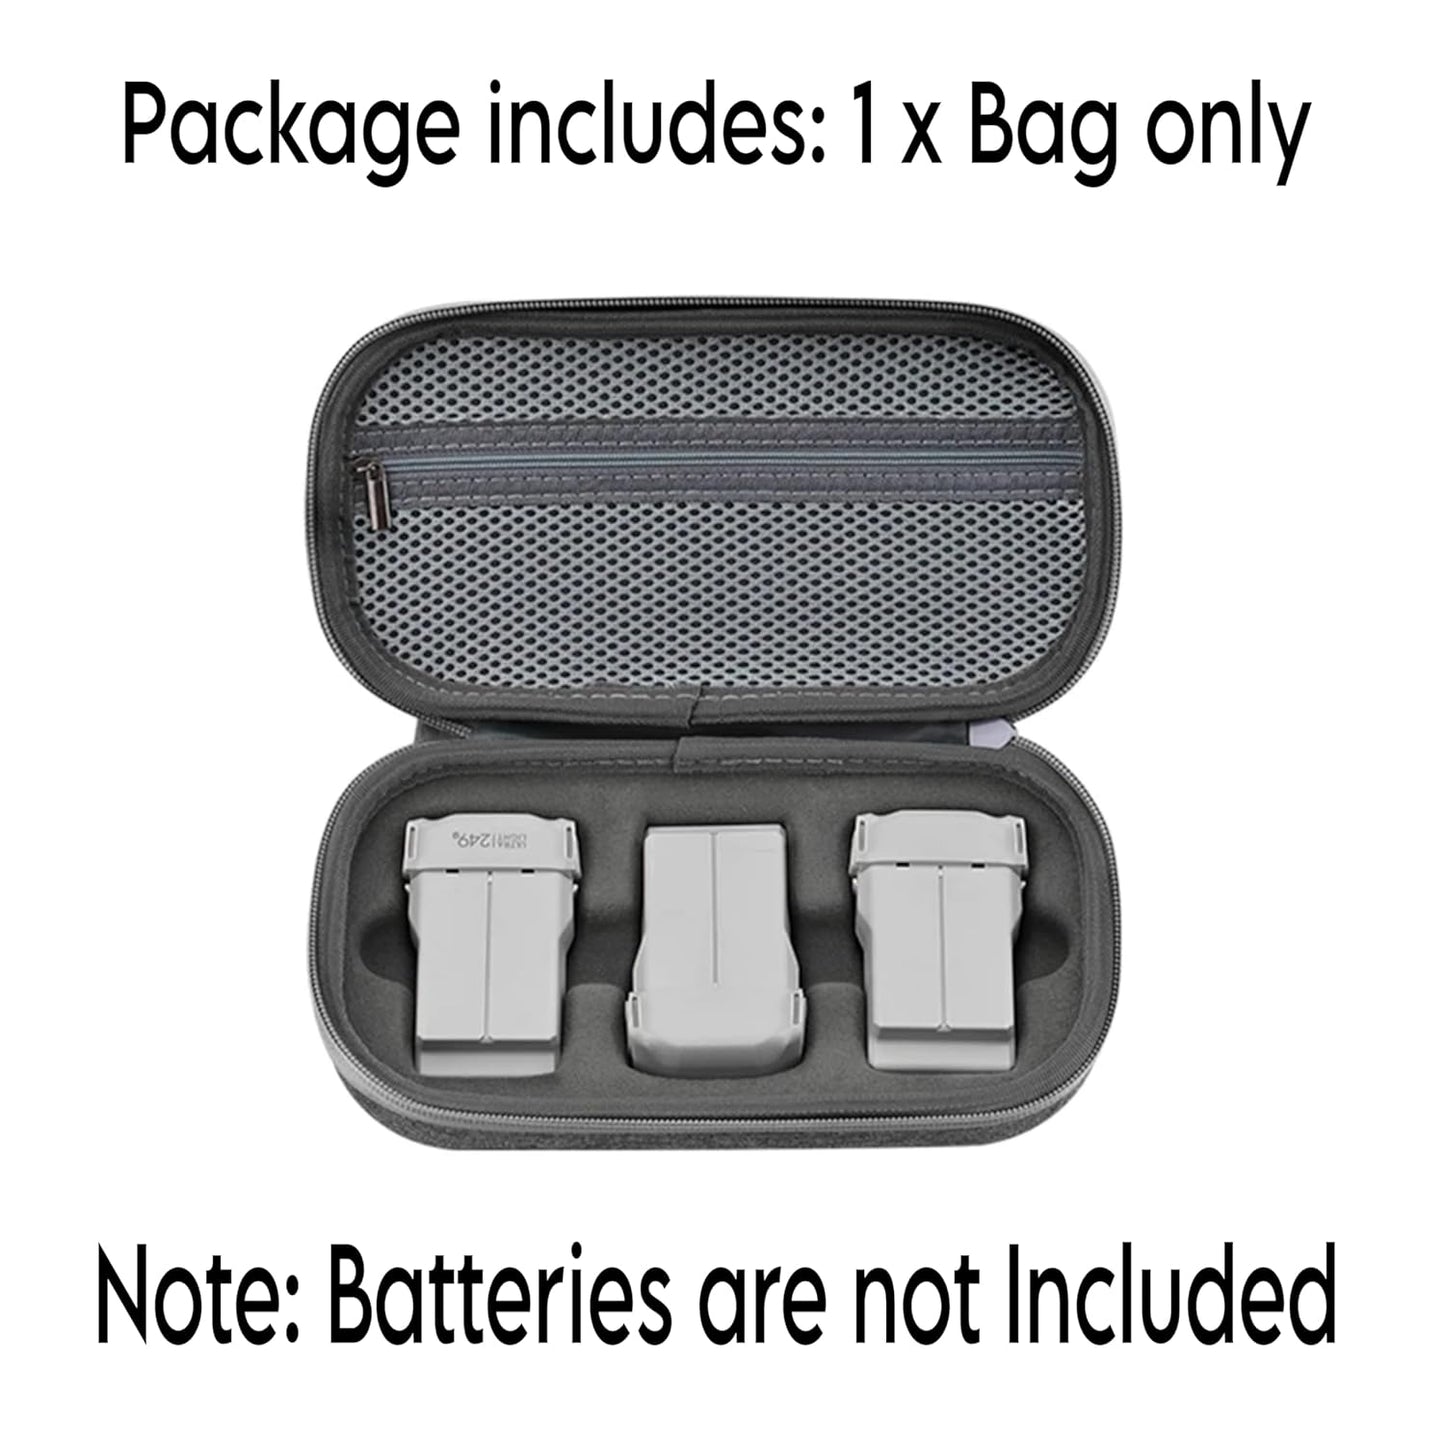 Carrying Case Bag For Dji Mini 4 & Mini 3 & 3 pro Battery Storage Bag